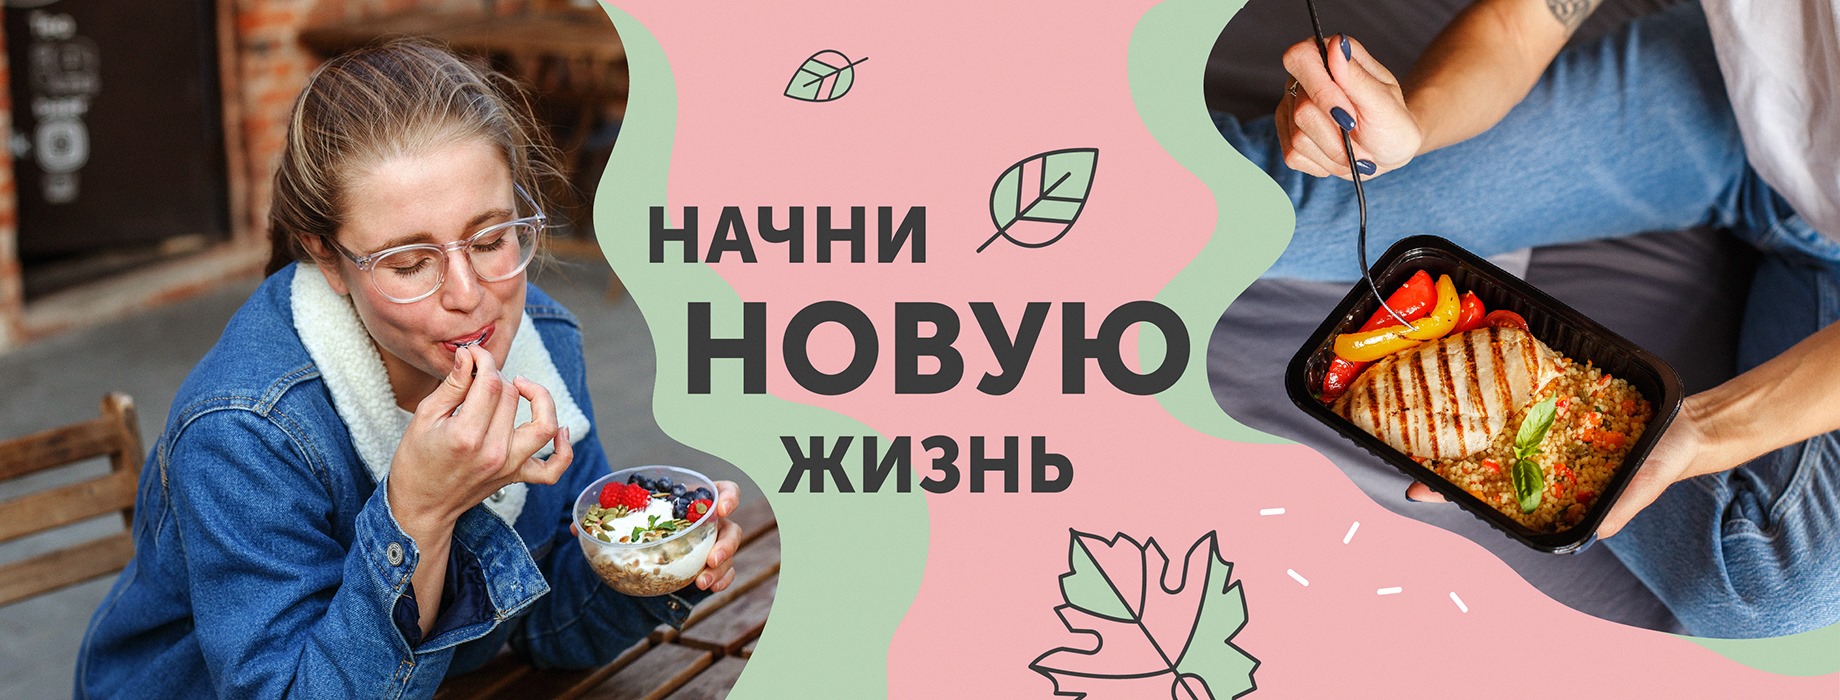 Ешь вкусно! День готовой и полезной еды — всего 675 рублей!